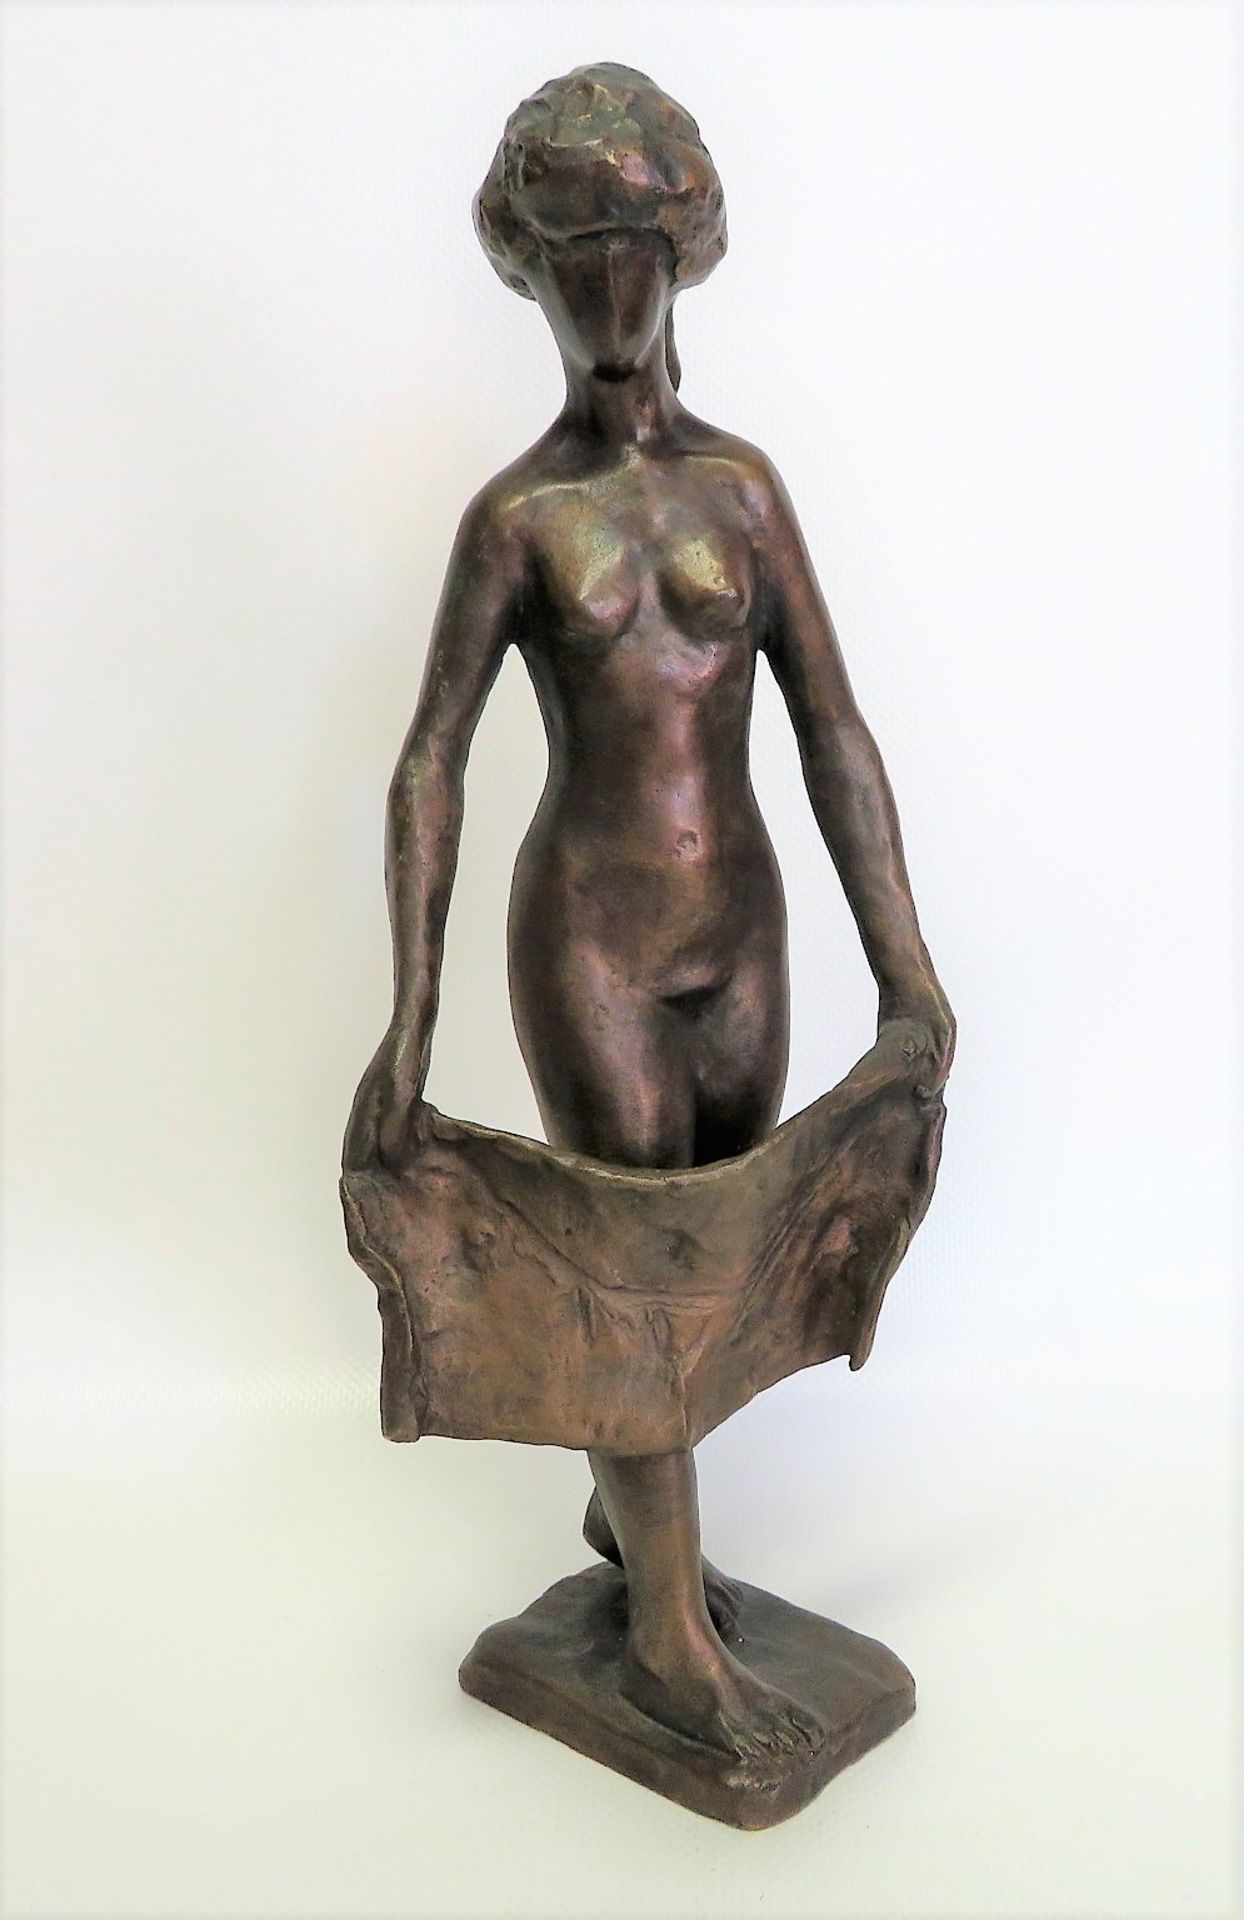 Unbekannt, 1. Hälfte 20. Jahrhundert, "Weiblicher Akt mit Badetuch", vollrunde Bronzeplastik, 27,5 x